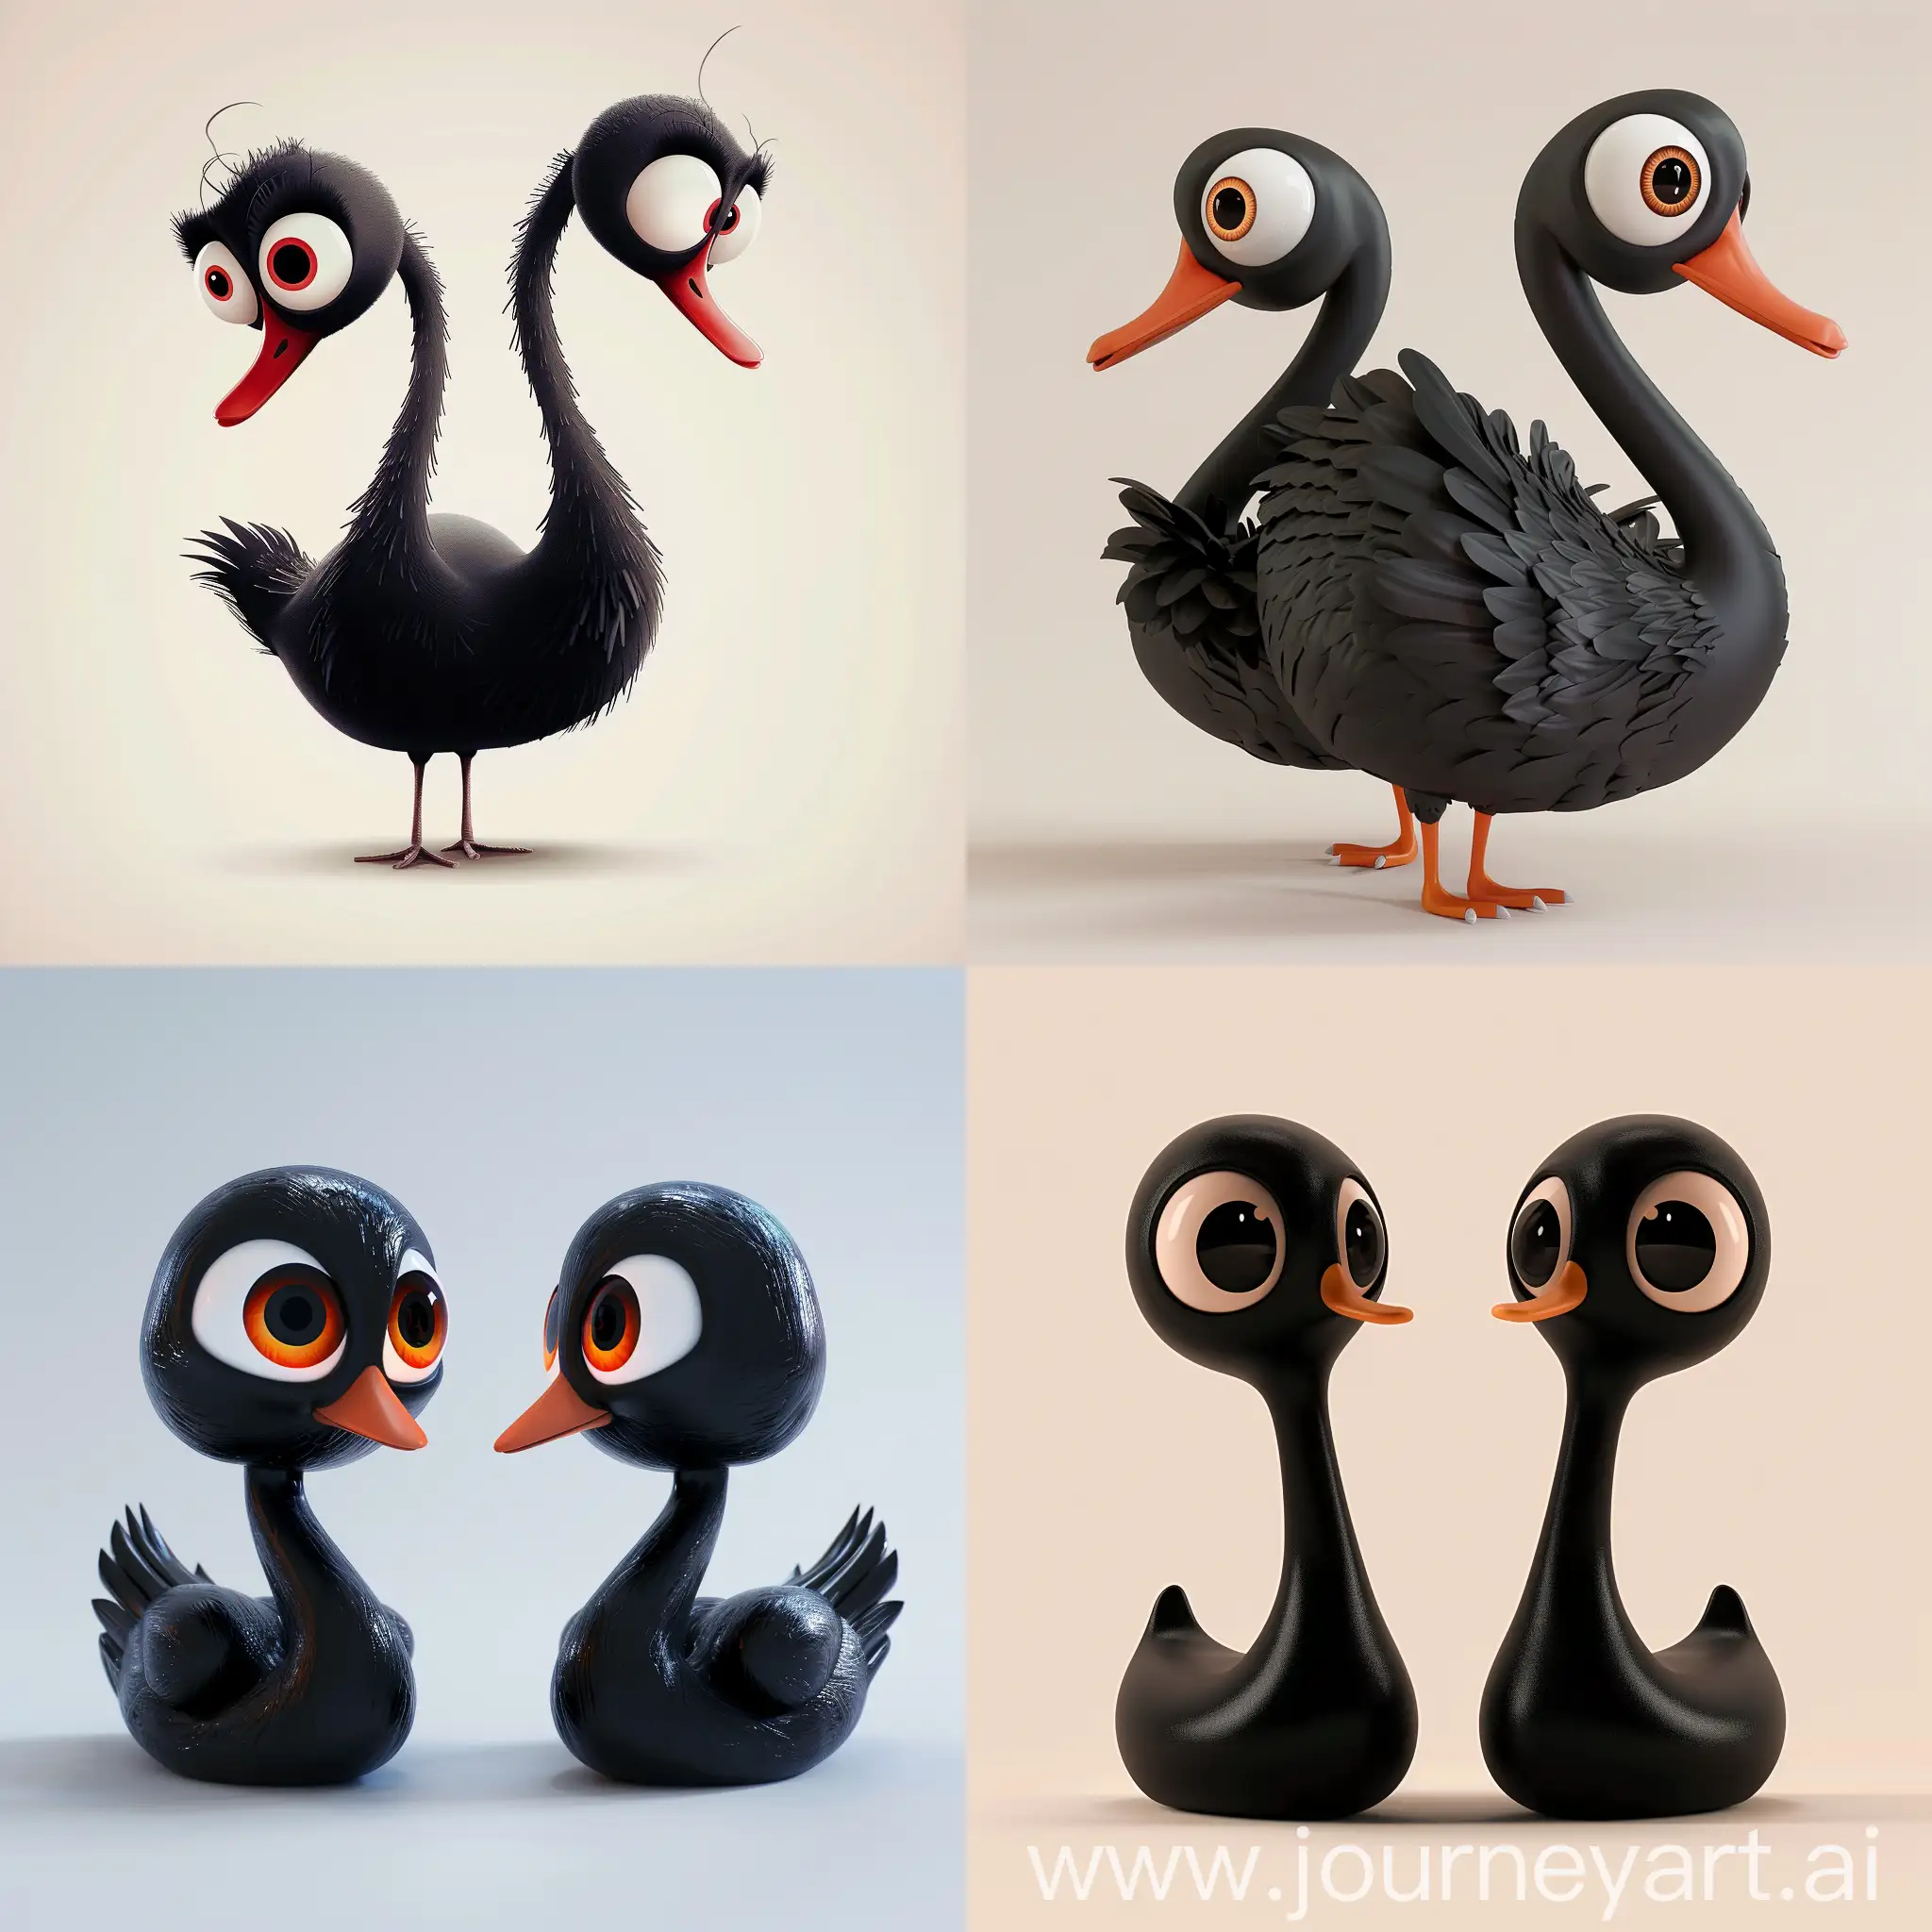 цифра два вид сбоку большими глазами злая в виде черного лебедя симметричный анимация pixar на светлом фоне

